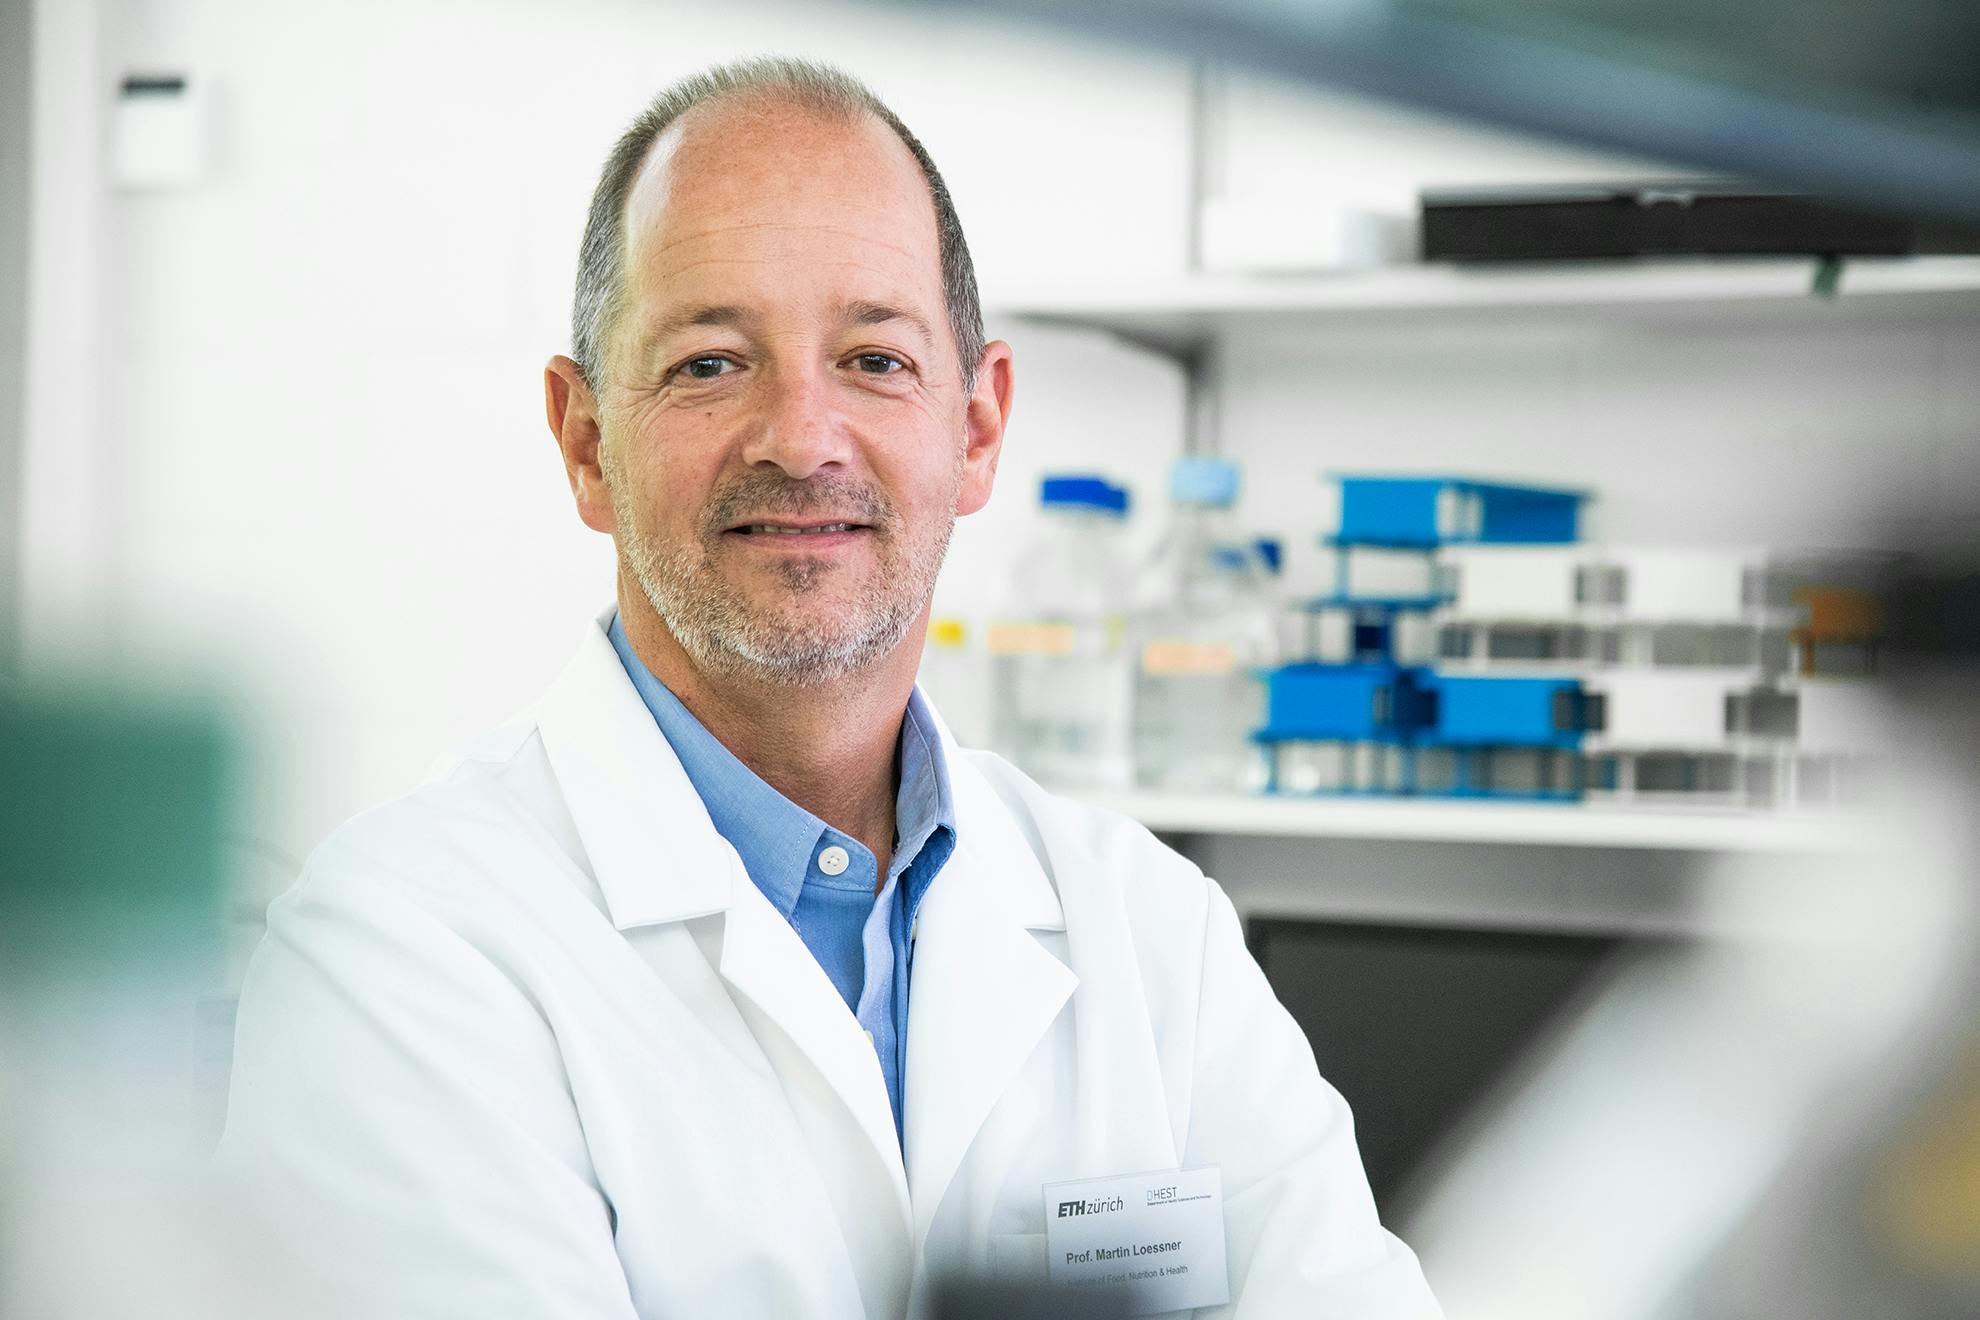 Prof. Dr. Martin J. Loessner ist Professor für Lebensmittelmikrobiologie am Institut für Lebensmittelwissenschaften, Ernährung und Gesundheit der ETH Zürich.